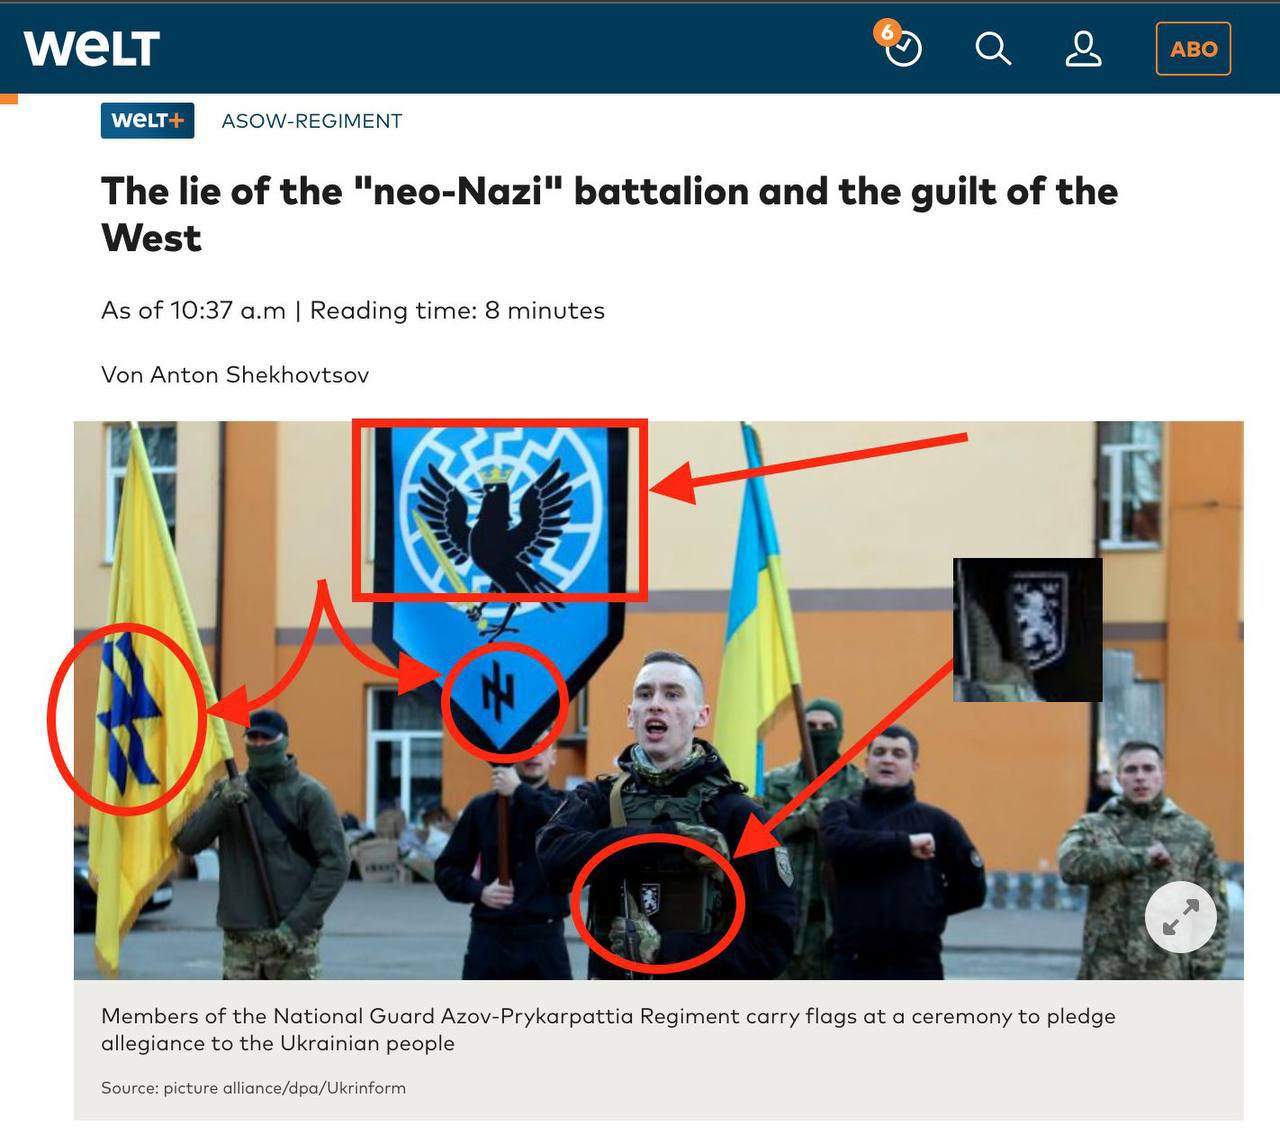 Западные СМИ утверждают, что неонацизм на Украине - "ложь", но невзначай показывают нацистскую символику на её "защитниках", попадающих в объектив. Империя лжи, как точн7о было сказано. 